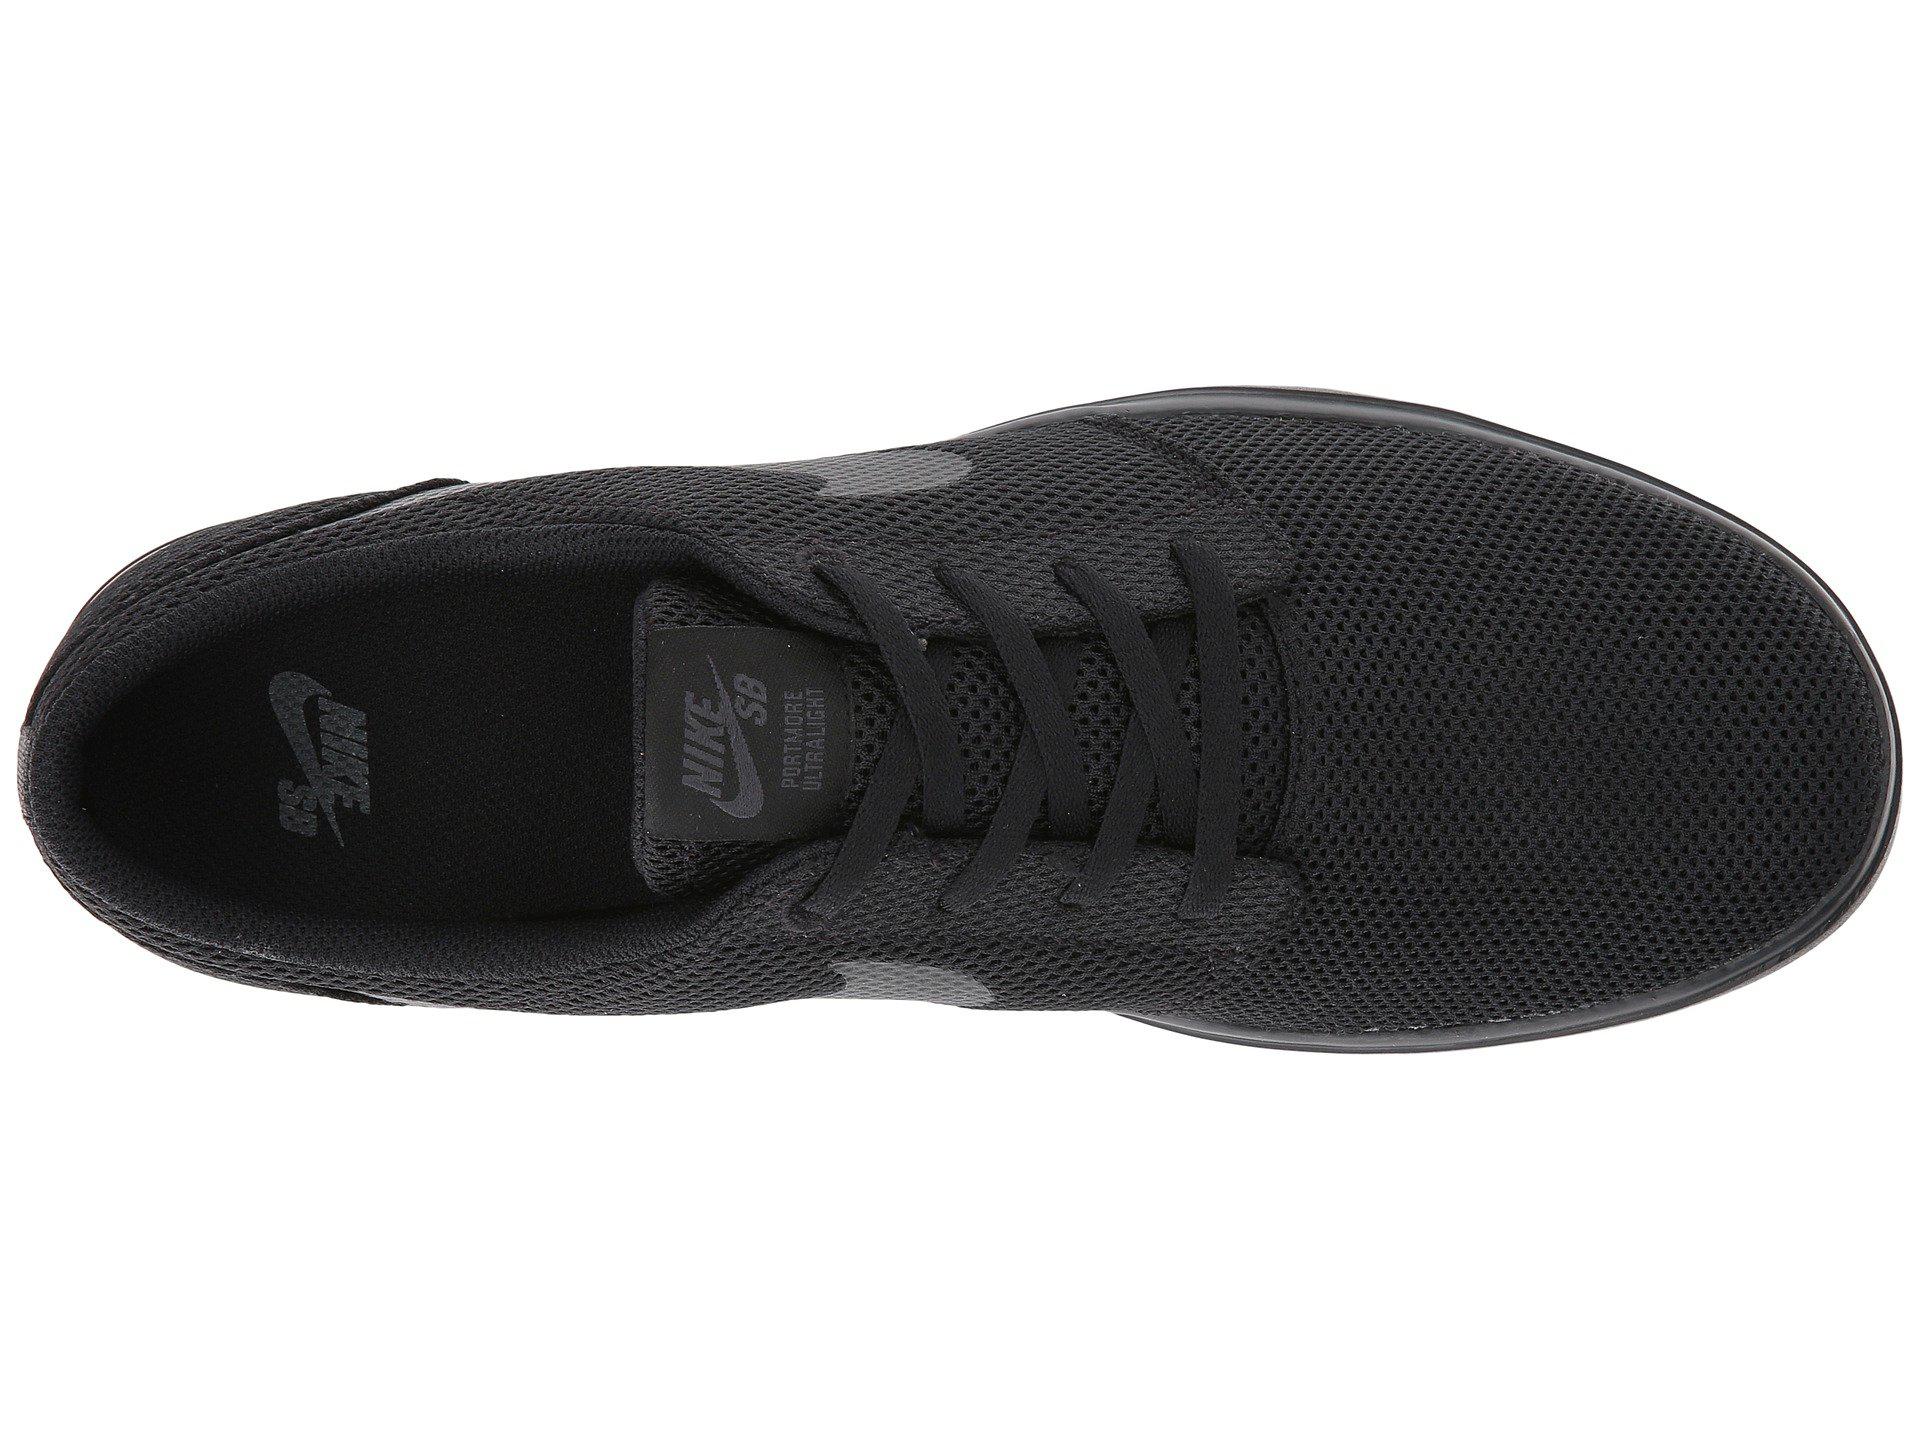 Nike Rubber Portmore Ii Ultralight (black/black/anthracite) Skate Shoes for  Men | Lyst